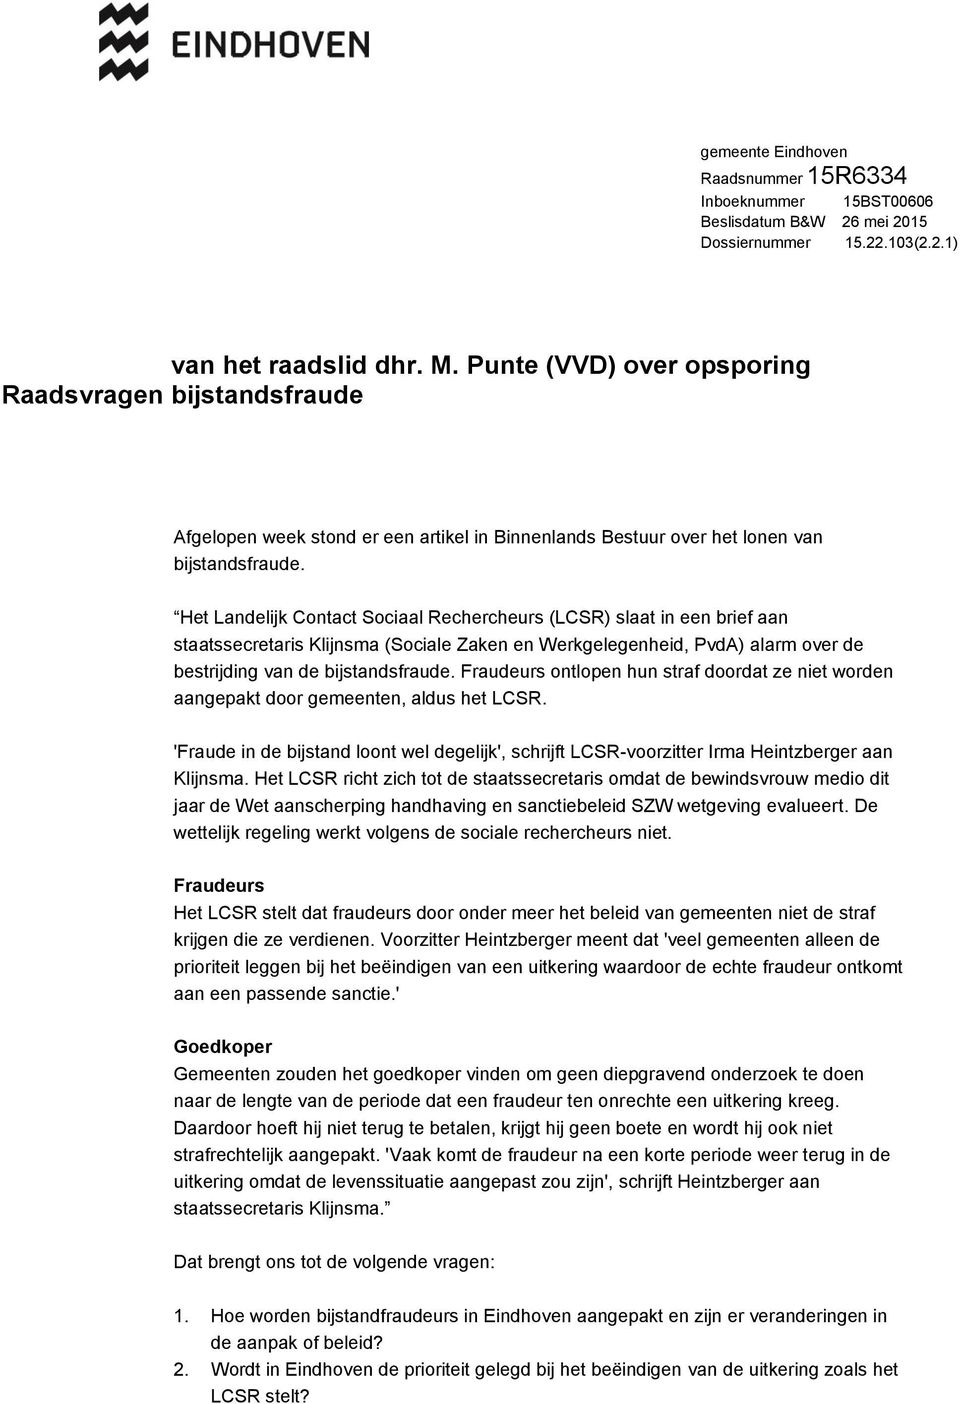 Het Landelijk Contact Sociaal Rechercheurs (LCSR) slaat in een brief aan staatssecretaris Klijnsma (Sociale Zaken en Werkgelegenheid, PvdA) alarm over de bestrijding van de bijstandsfraude.